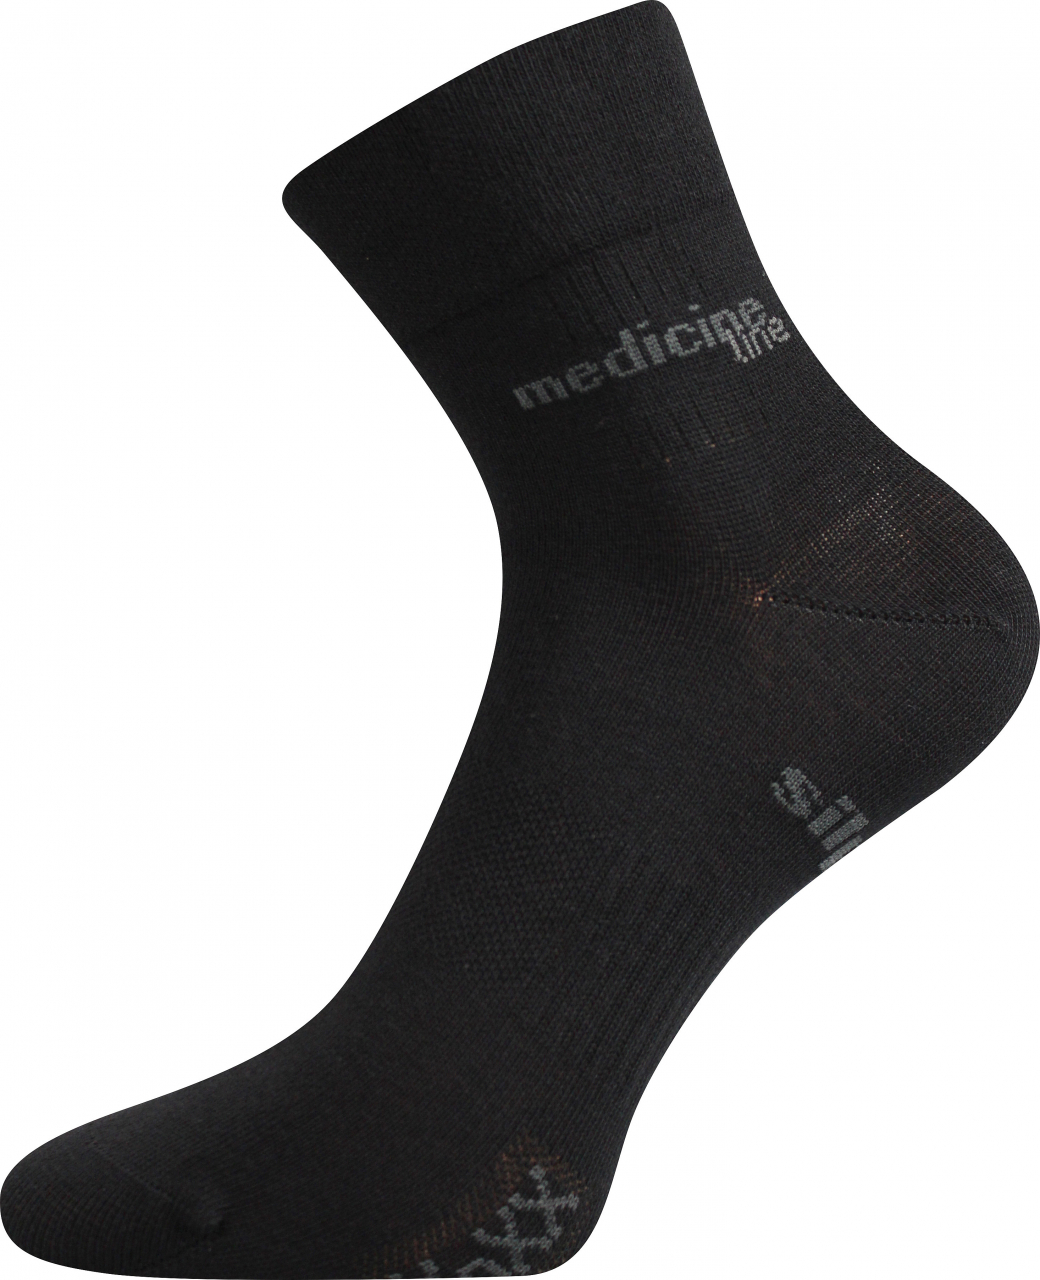 Ponožky zdravotní Mission Medicine - černé, 35-38